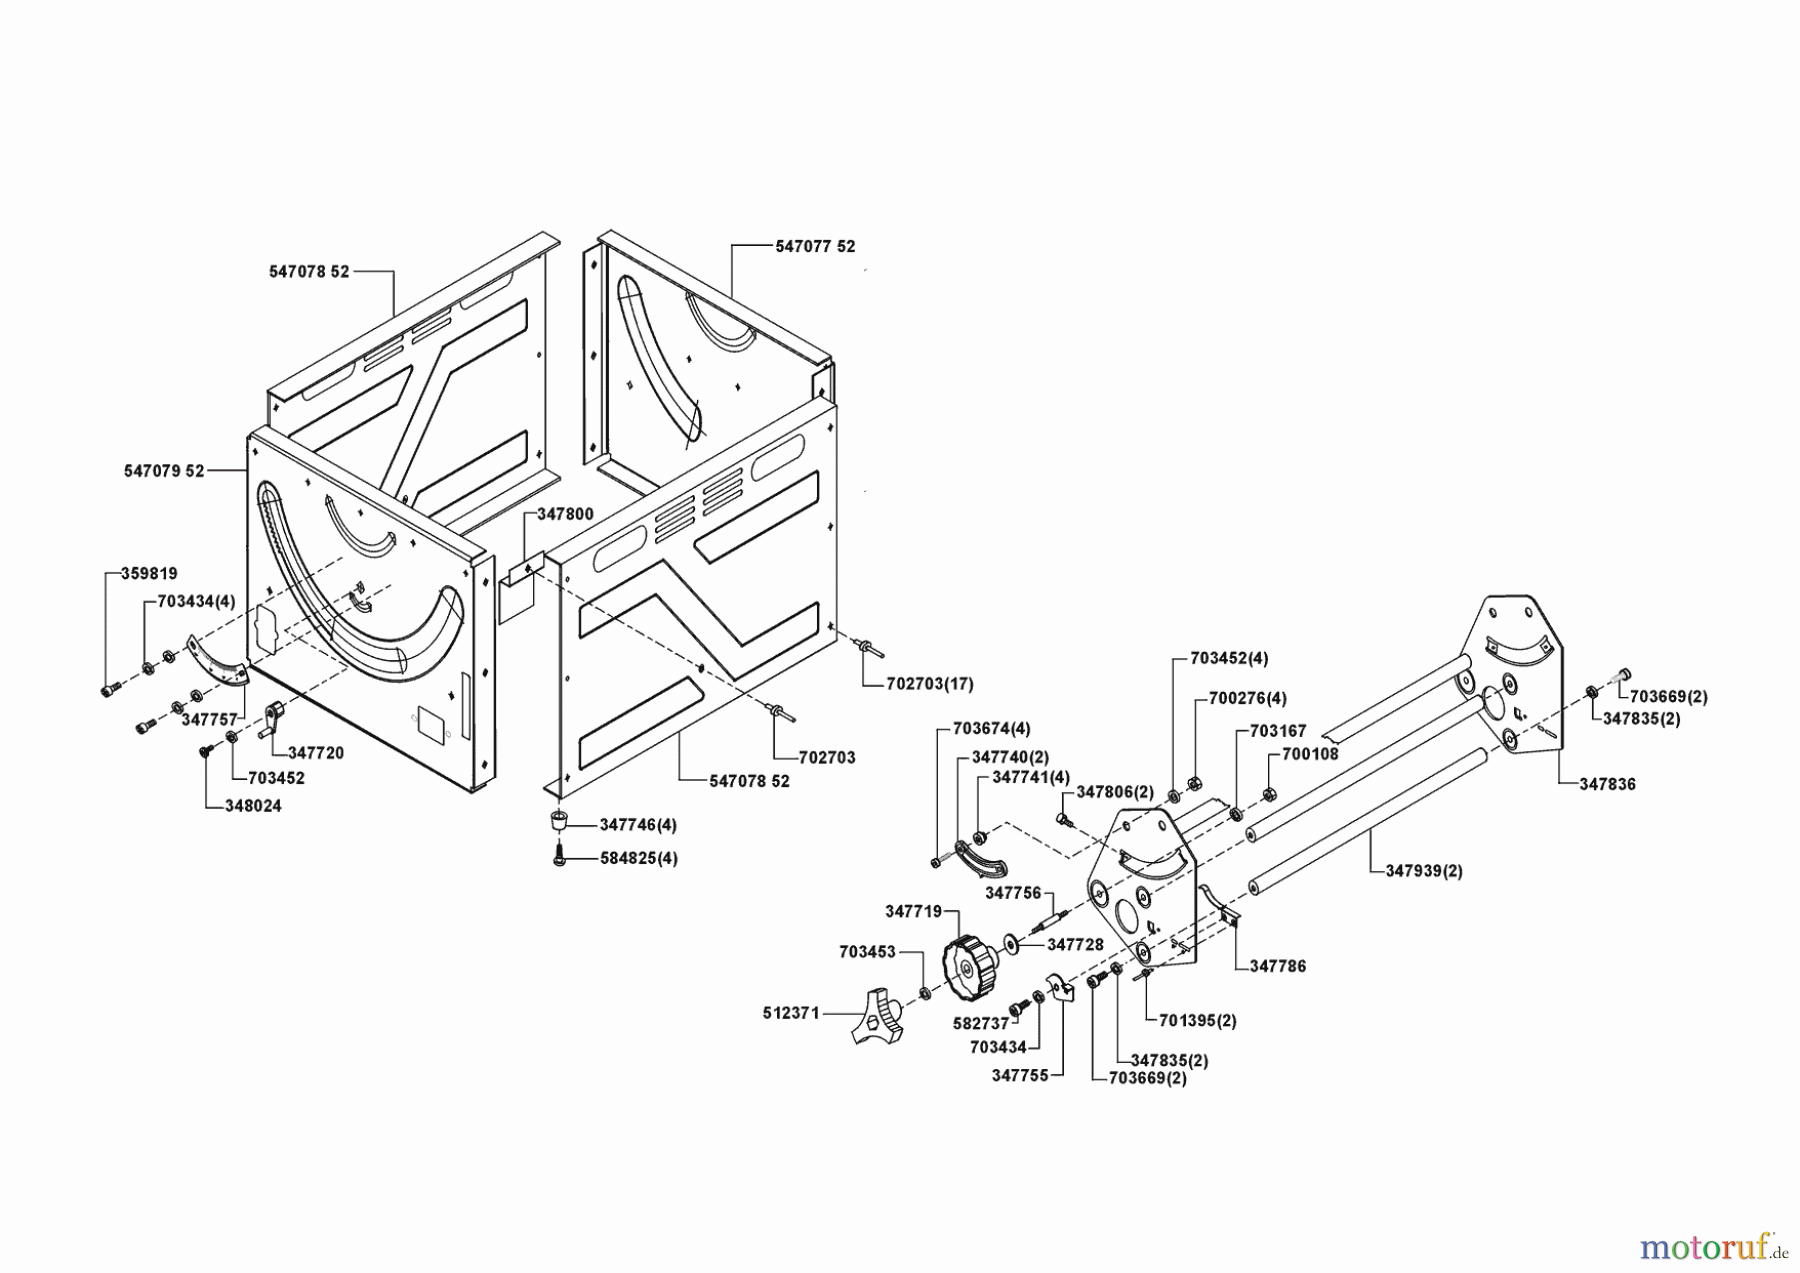  AL-KO Heimwerkertechnik Unterflurzugsäge UFS 240 E mit Box Seite 1